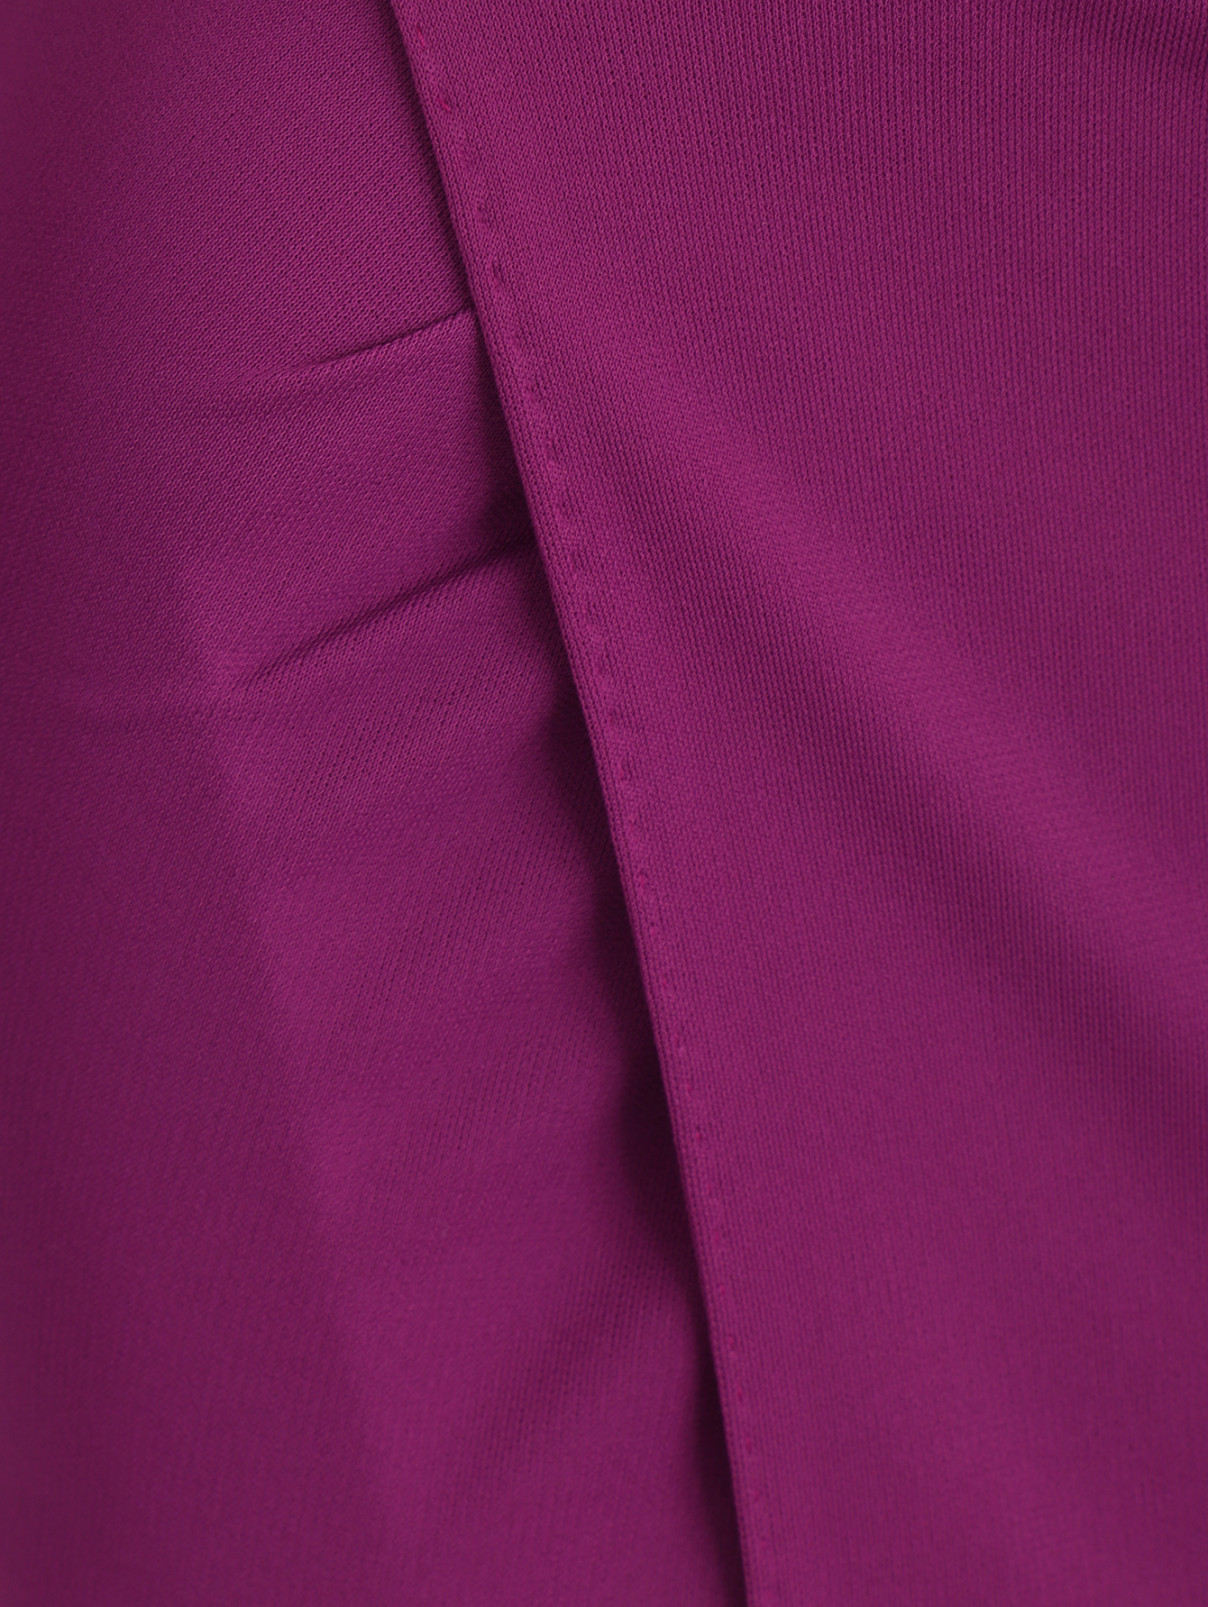 Платье с запахом и кожаными вставками Jean Paul Gaultier  –  Деталь  – Цвет:  Фиолетовый